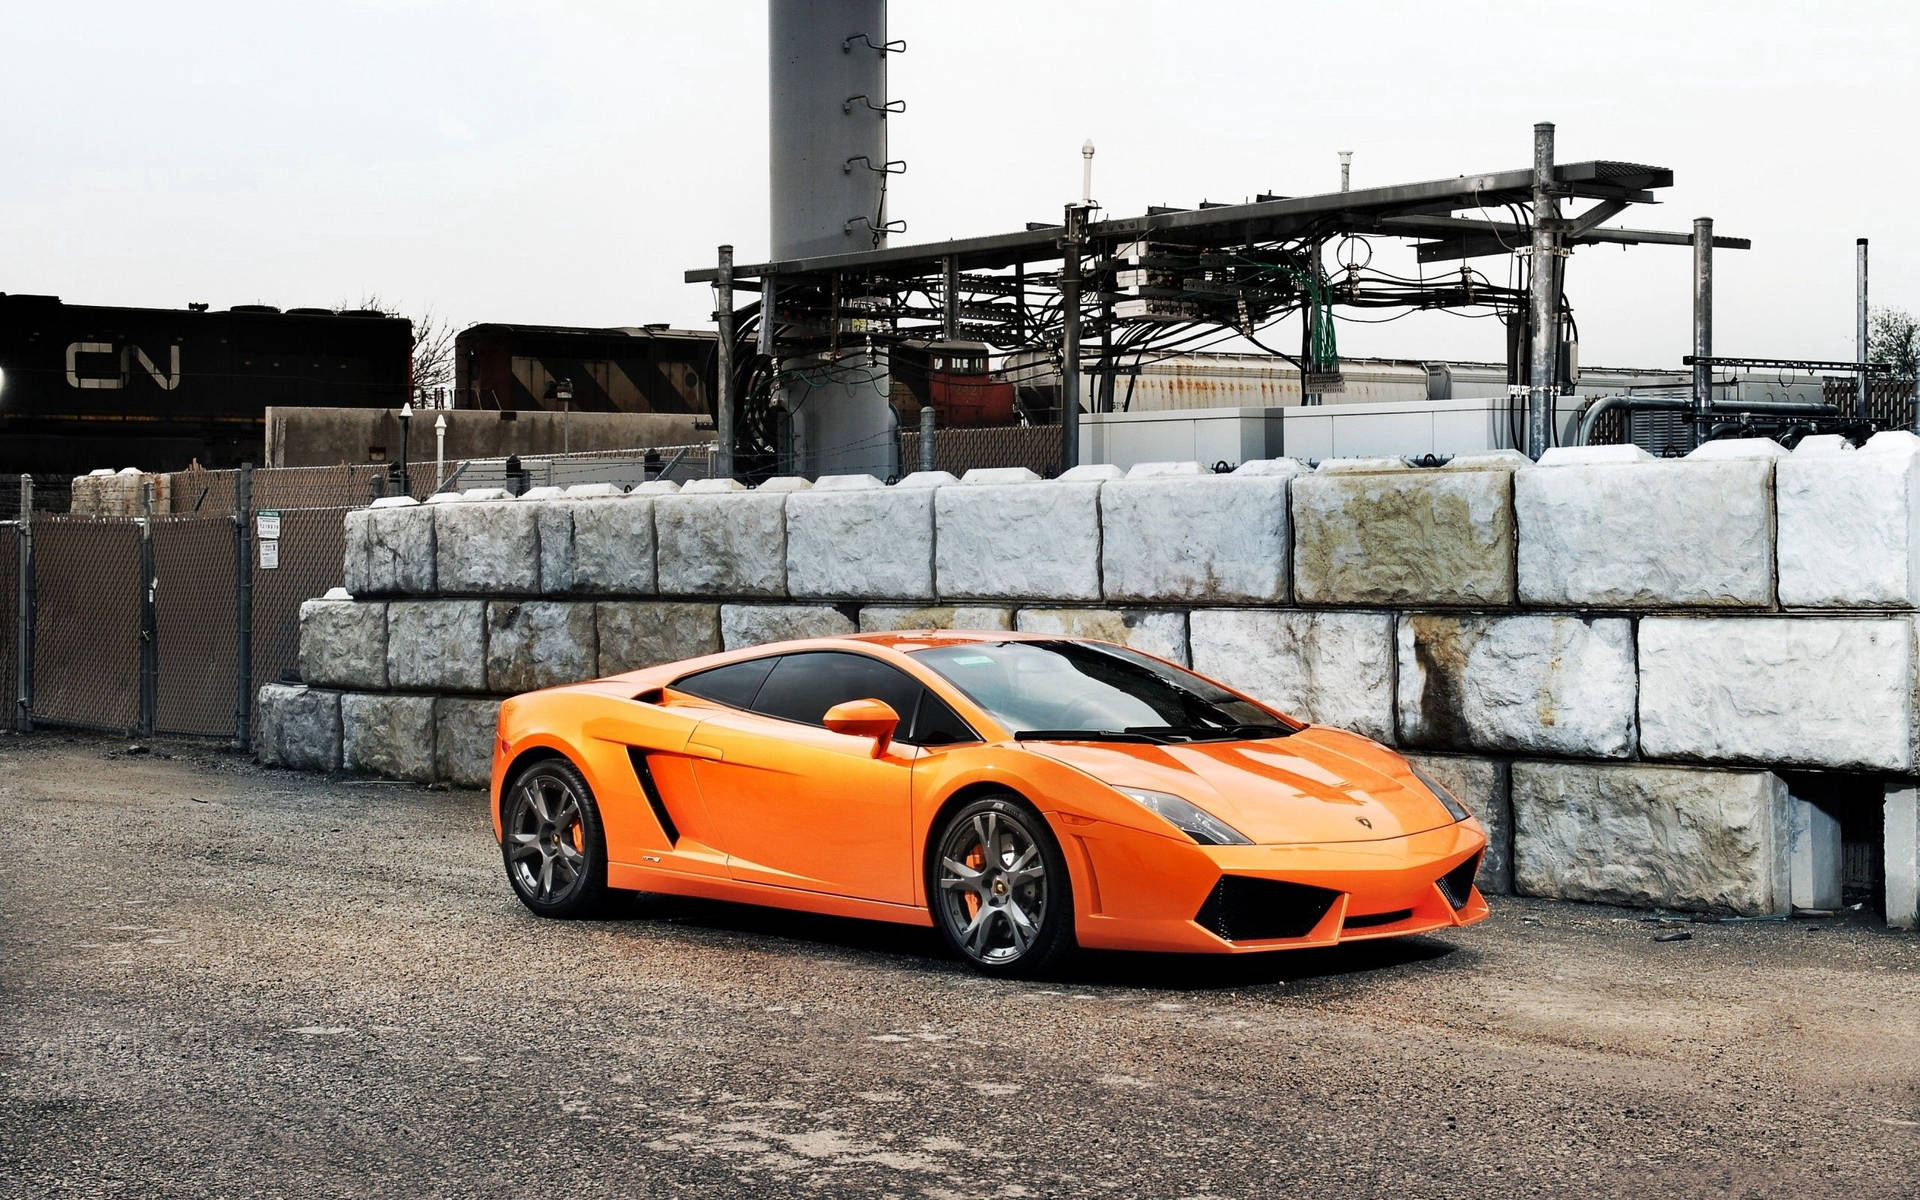 Power & Performance Meet: The Lamborghini Gallardo Wallpaper